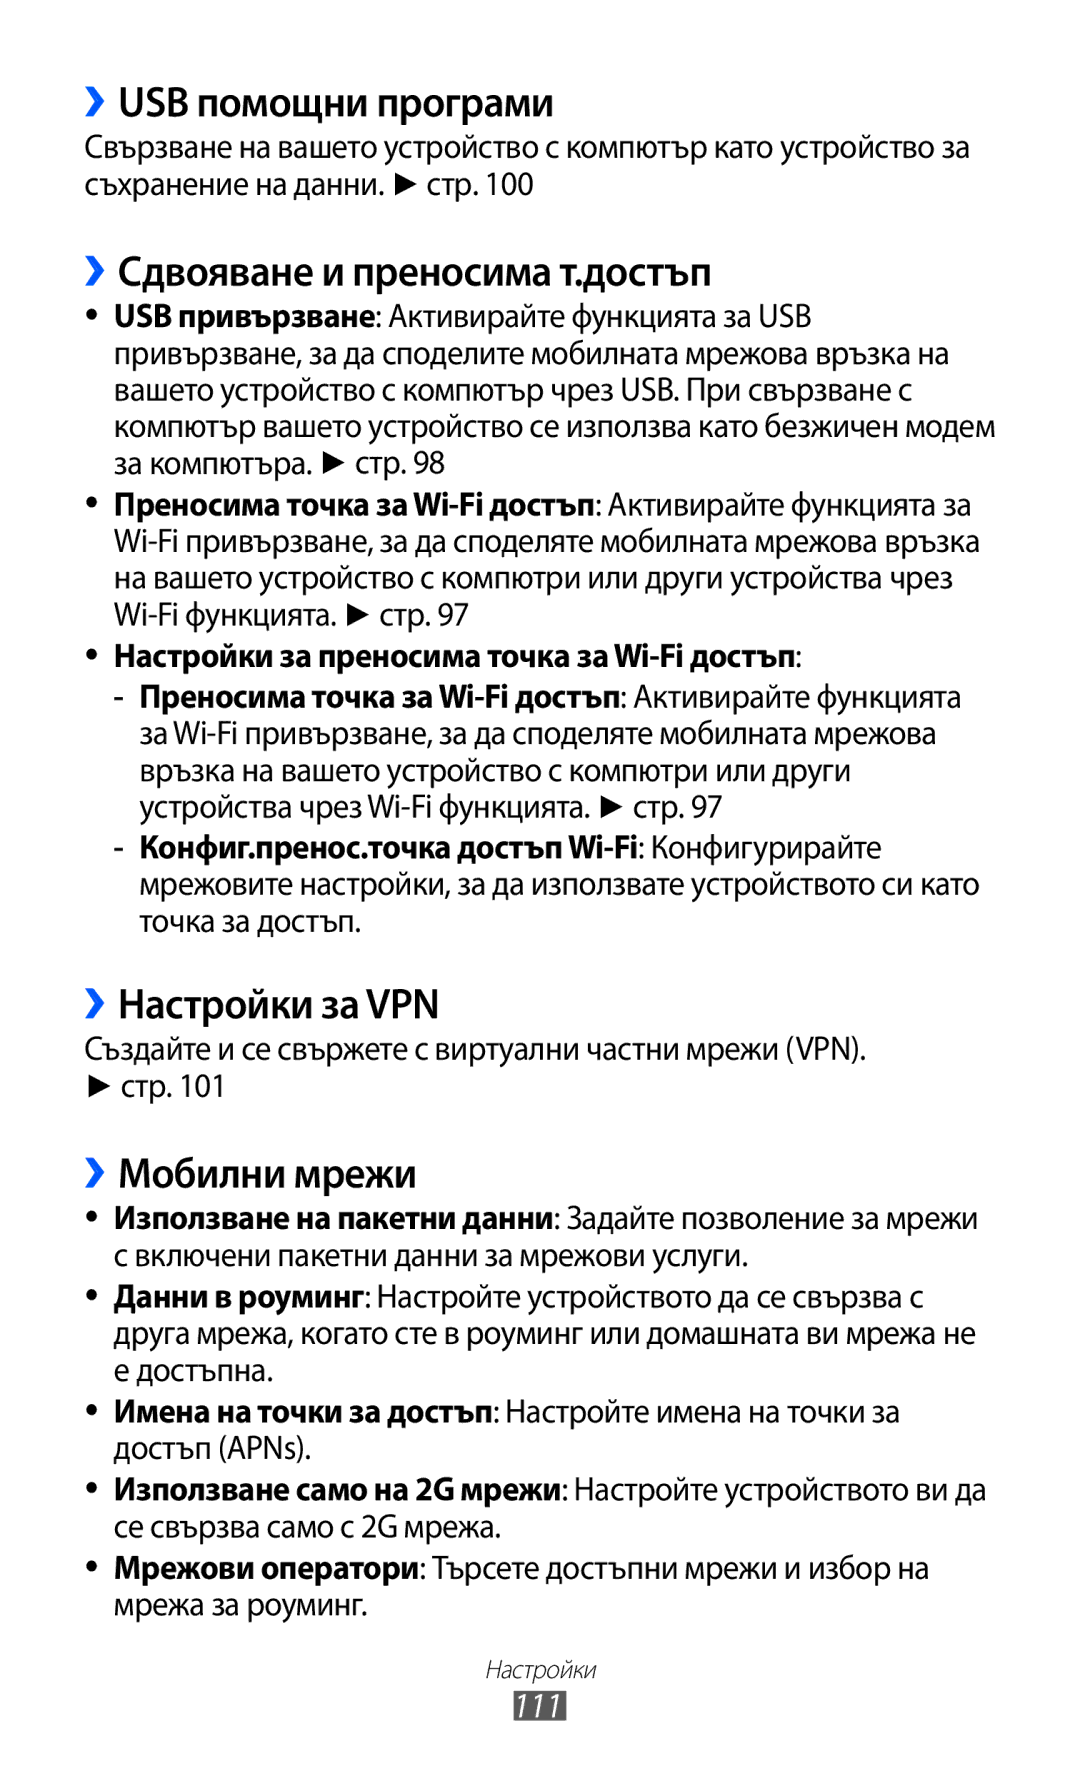 Samsung GT-S6802HKABGL ››USB помощни програми, ››Сдвояване и преносима т.достъп, ››Настройки за VPN, ››Мобилни мрежи, 111 